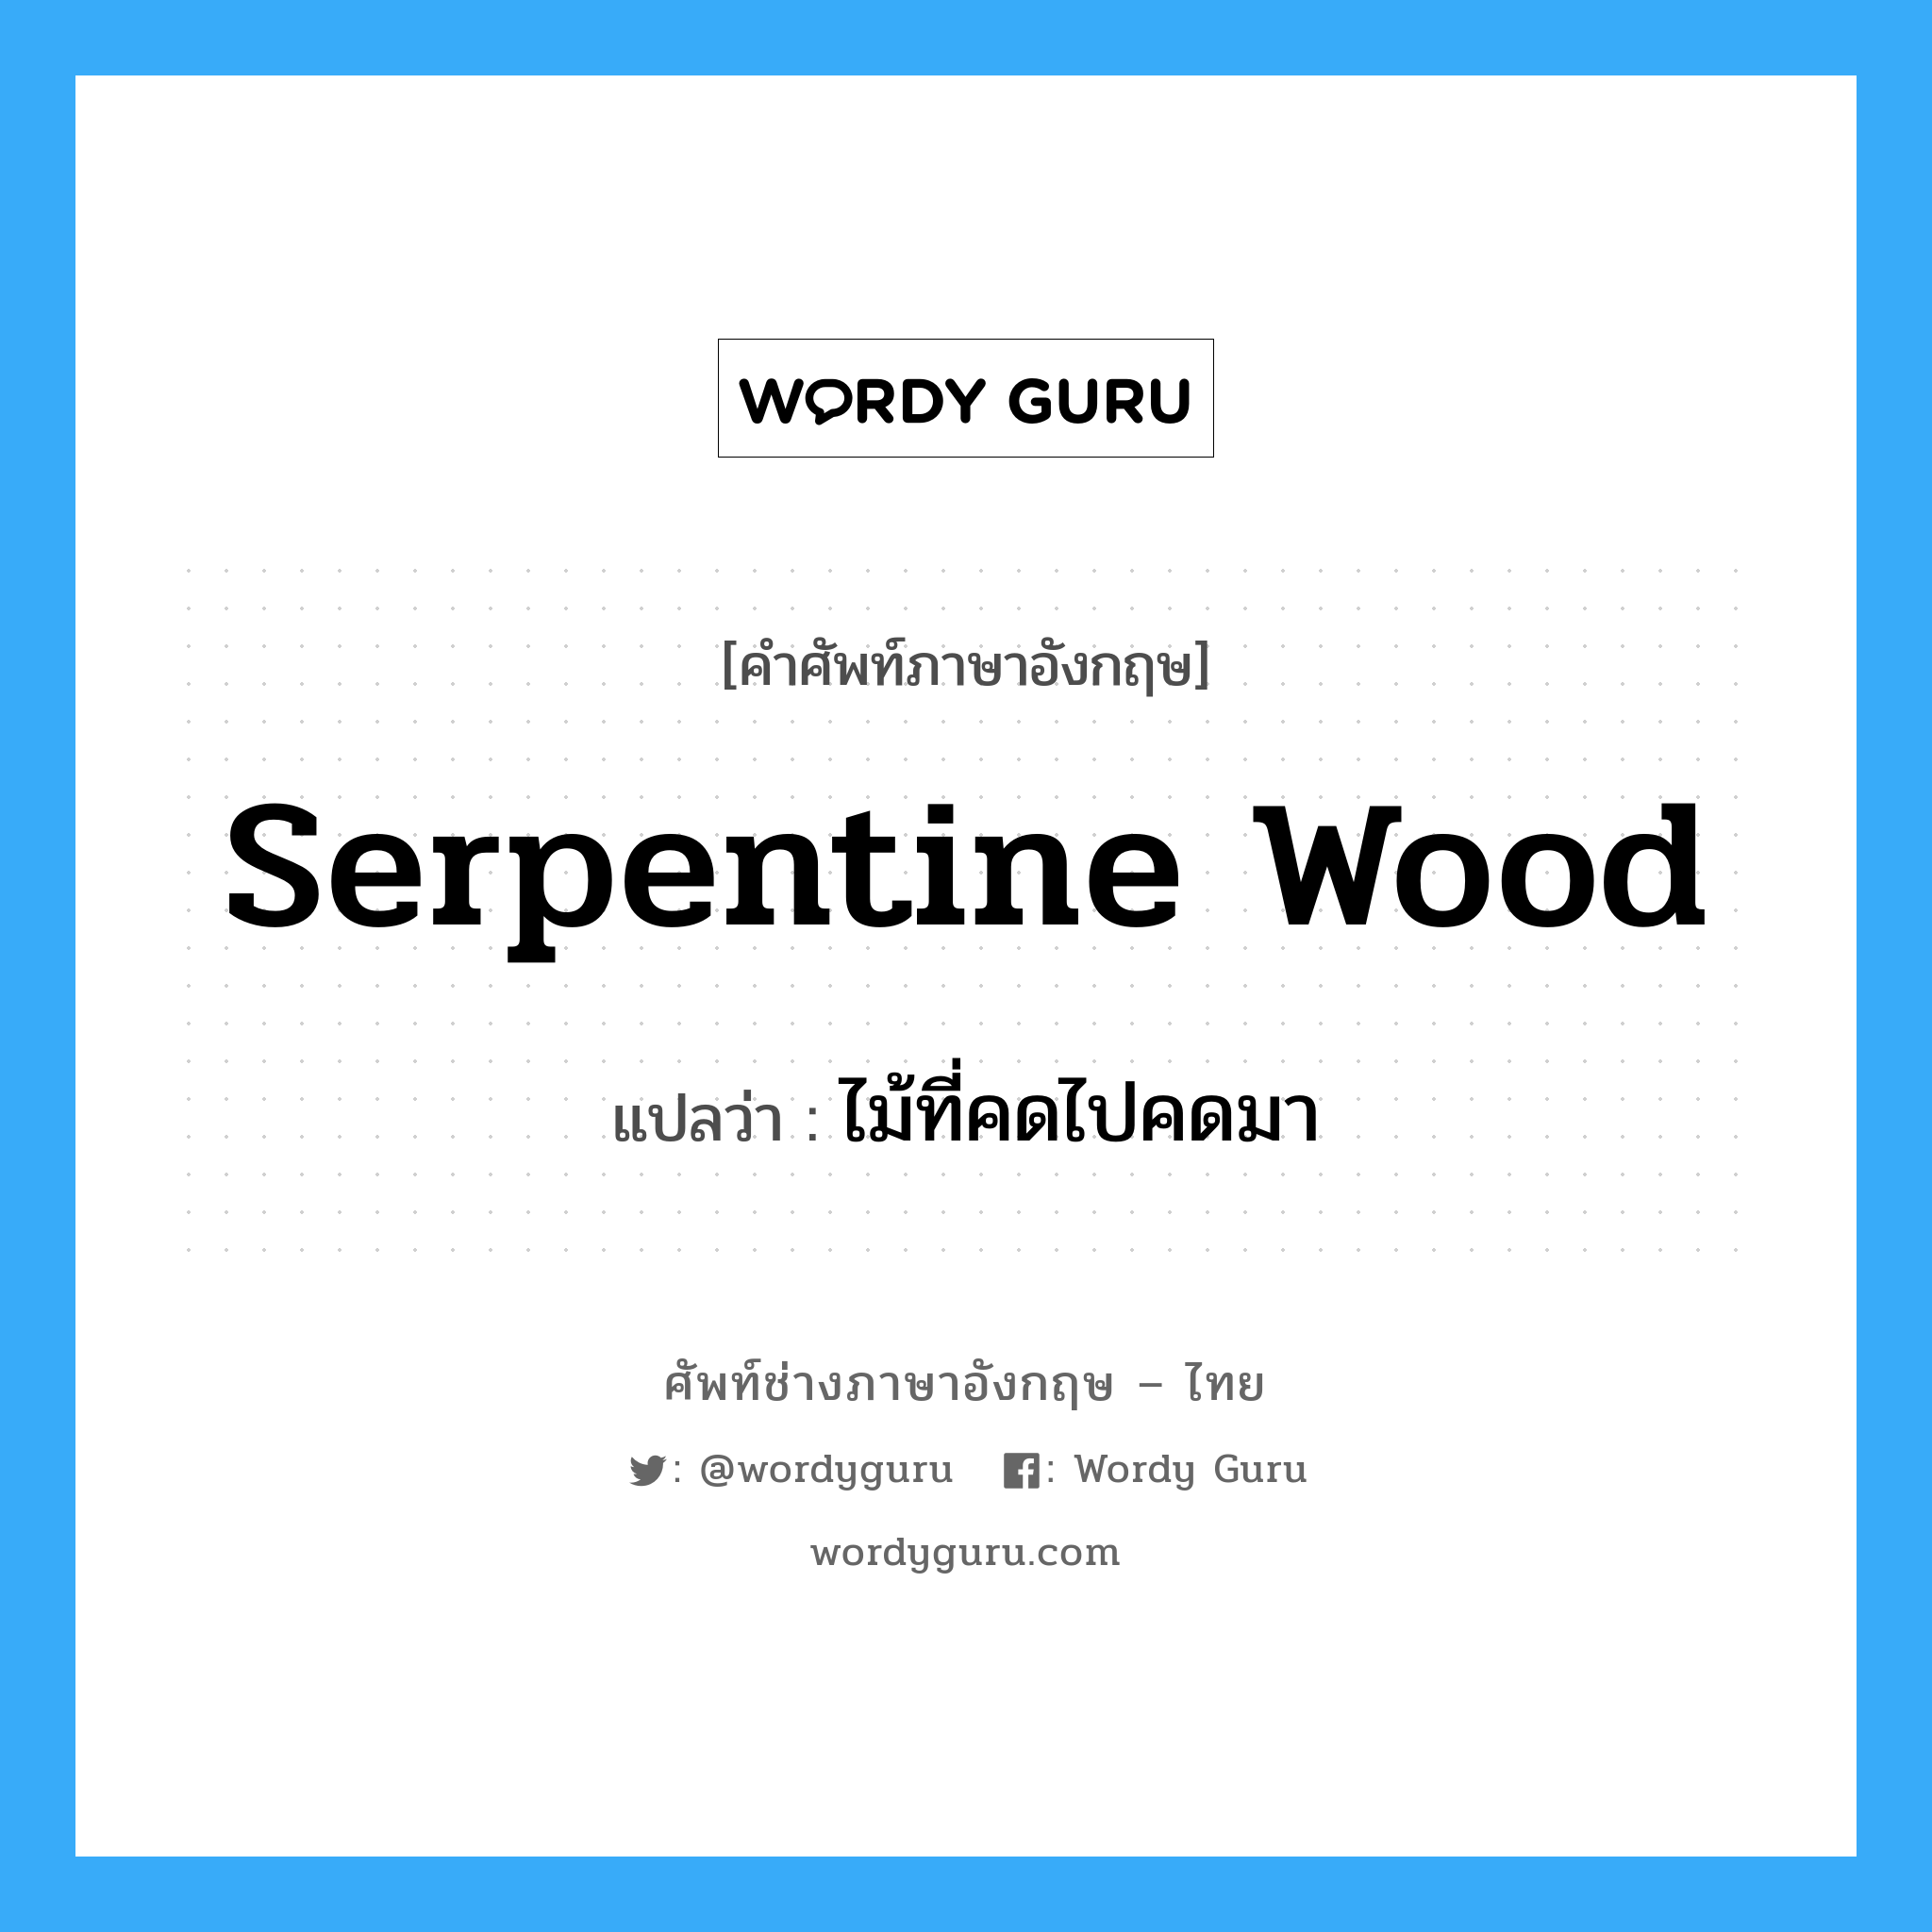 ไม้ที่คดไปคดมา ภาษาอังกฤษ?, คำศัพท์ช่างภาษาอังกฤษ - ไทย ไม้ที่คดไปคดมา คำศัพท์ภาษาอังกฤษ ไม้ที่คดไปคดมา แปลว่า serpentine wood